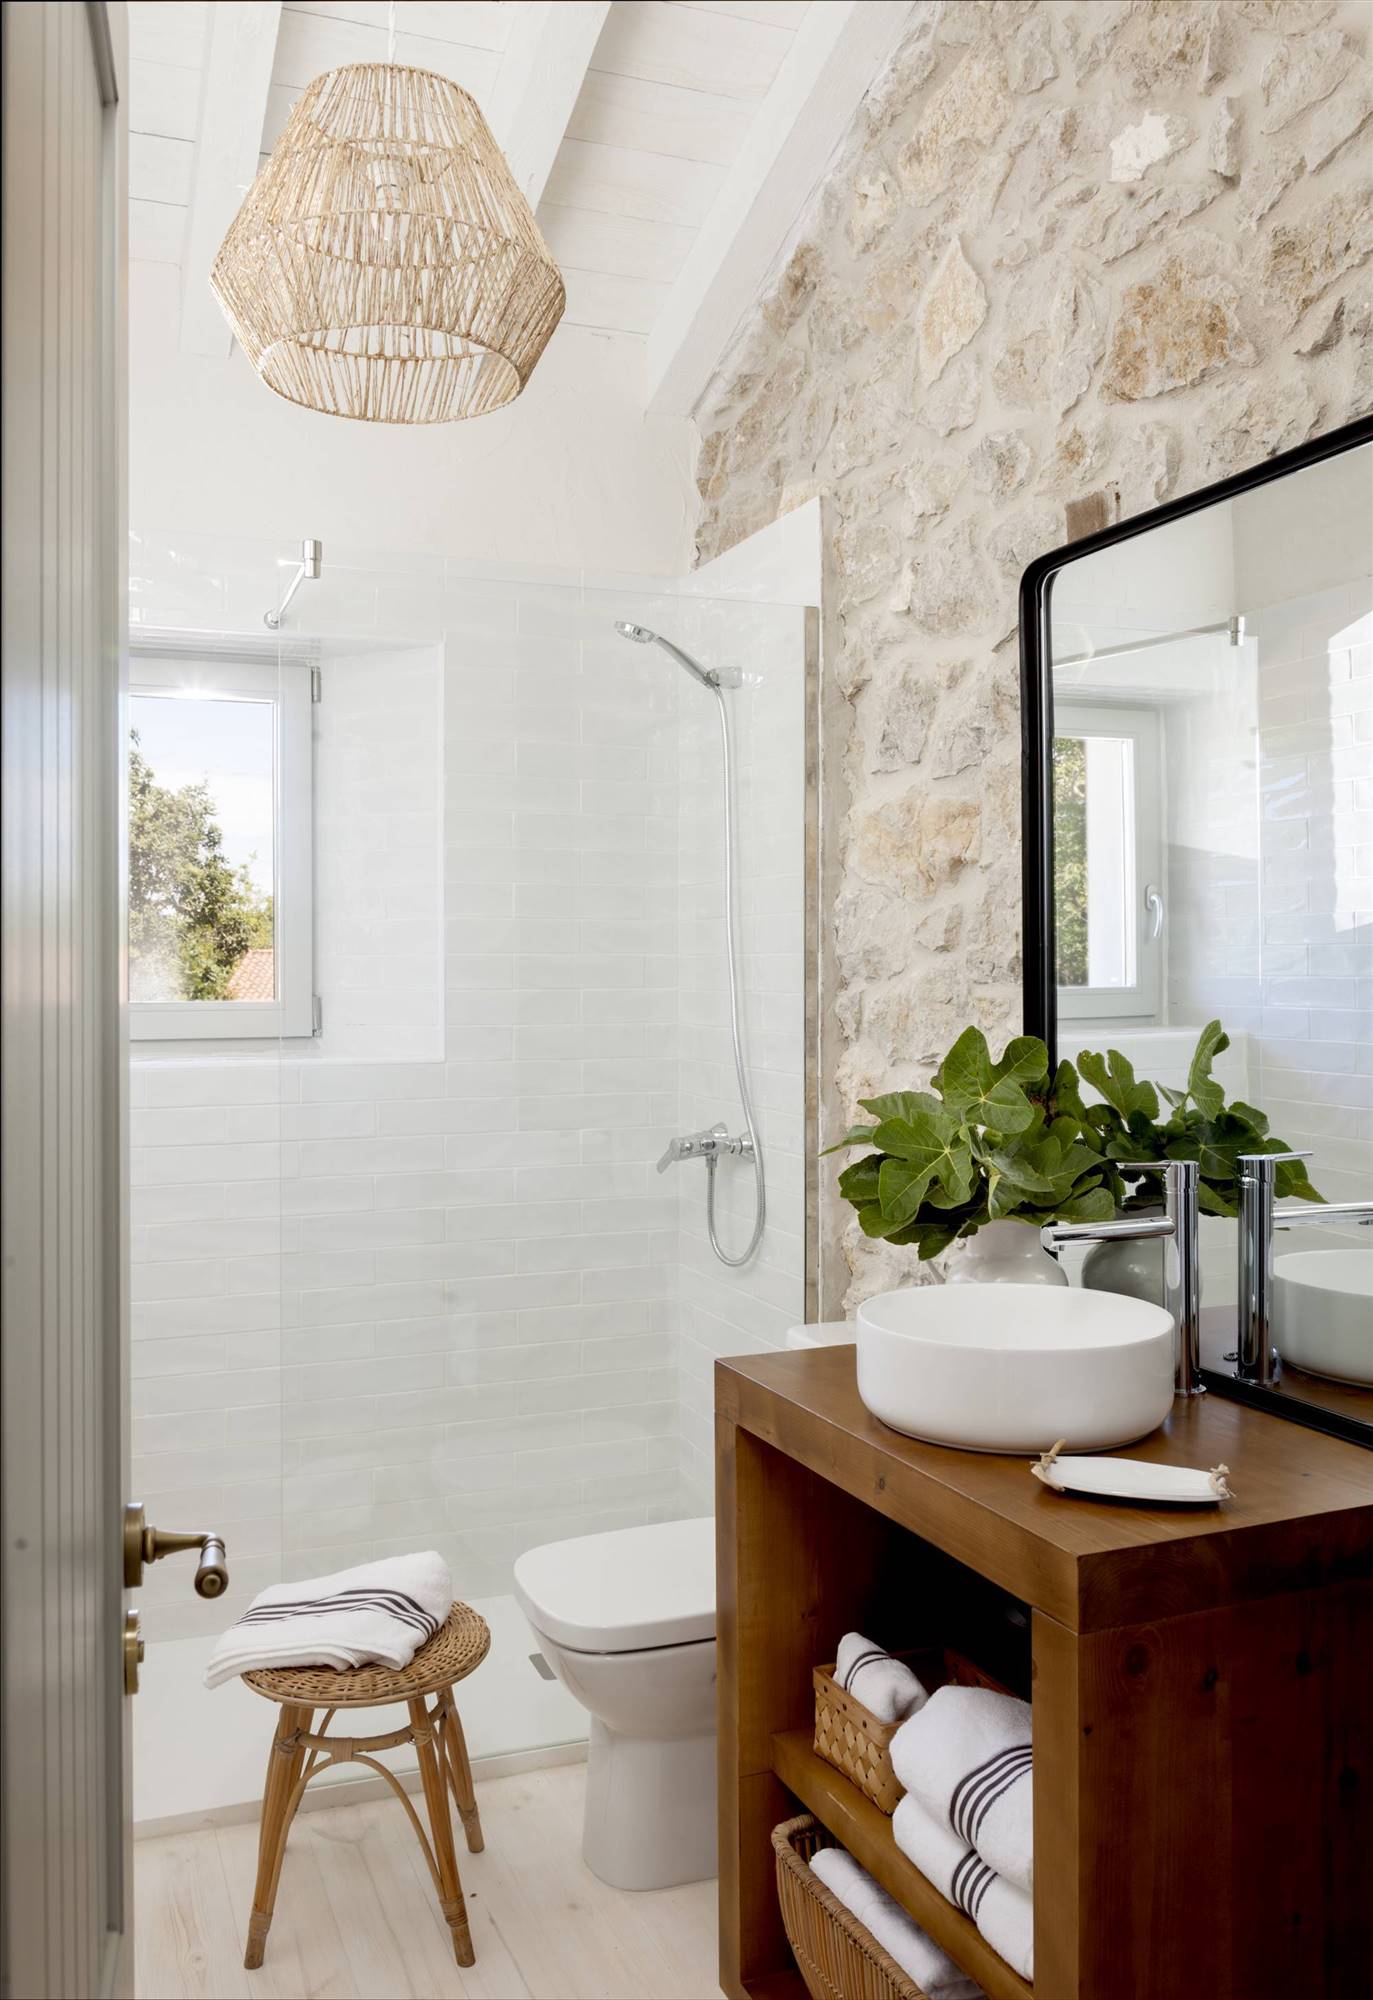 Baño rústico con pared de piedra, azulejos blancos en la ducha y mueble de madera. 